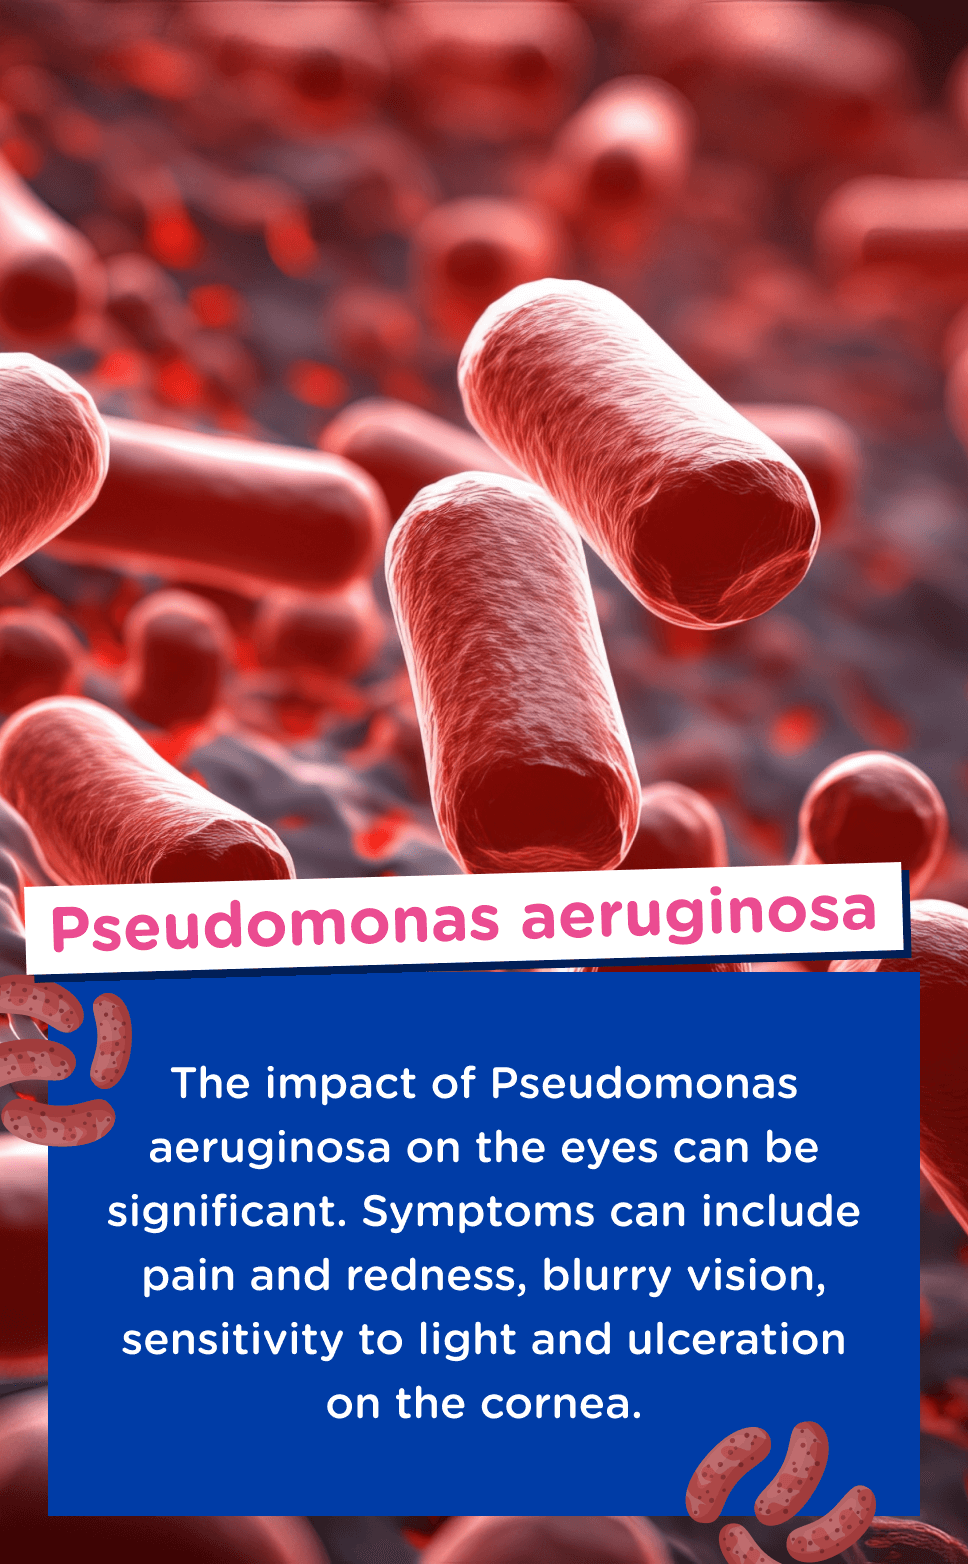 Image of Pseudomonas aeruginosa bacteria